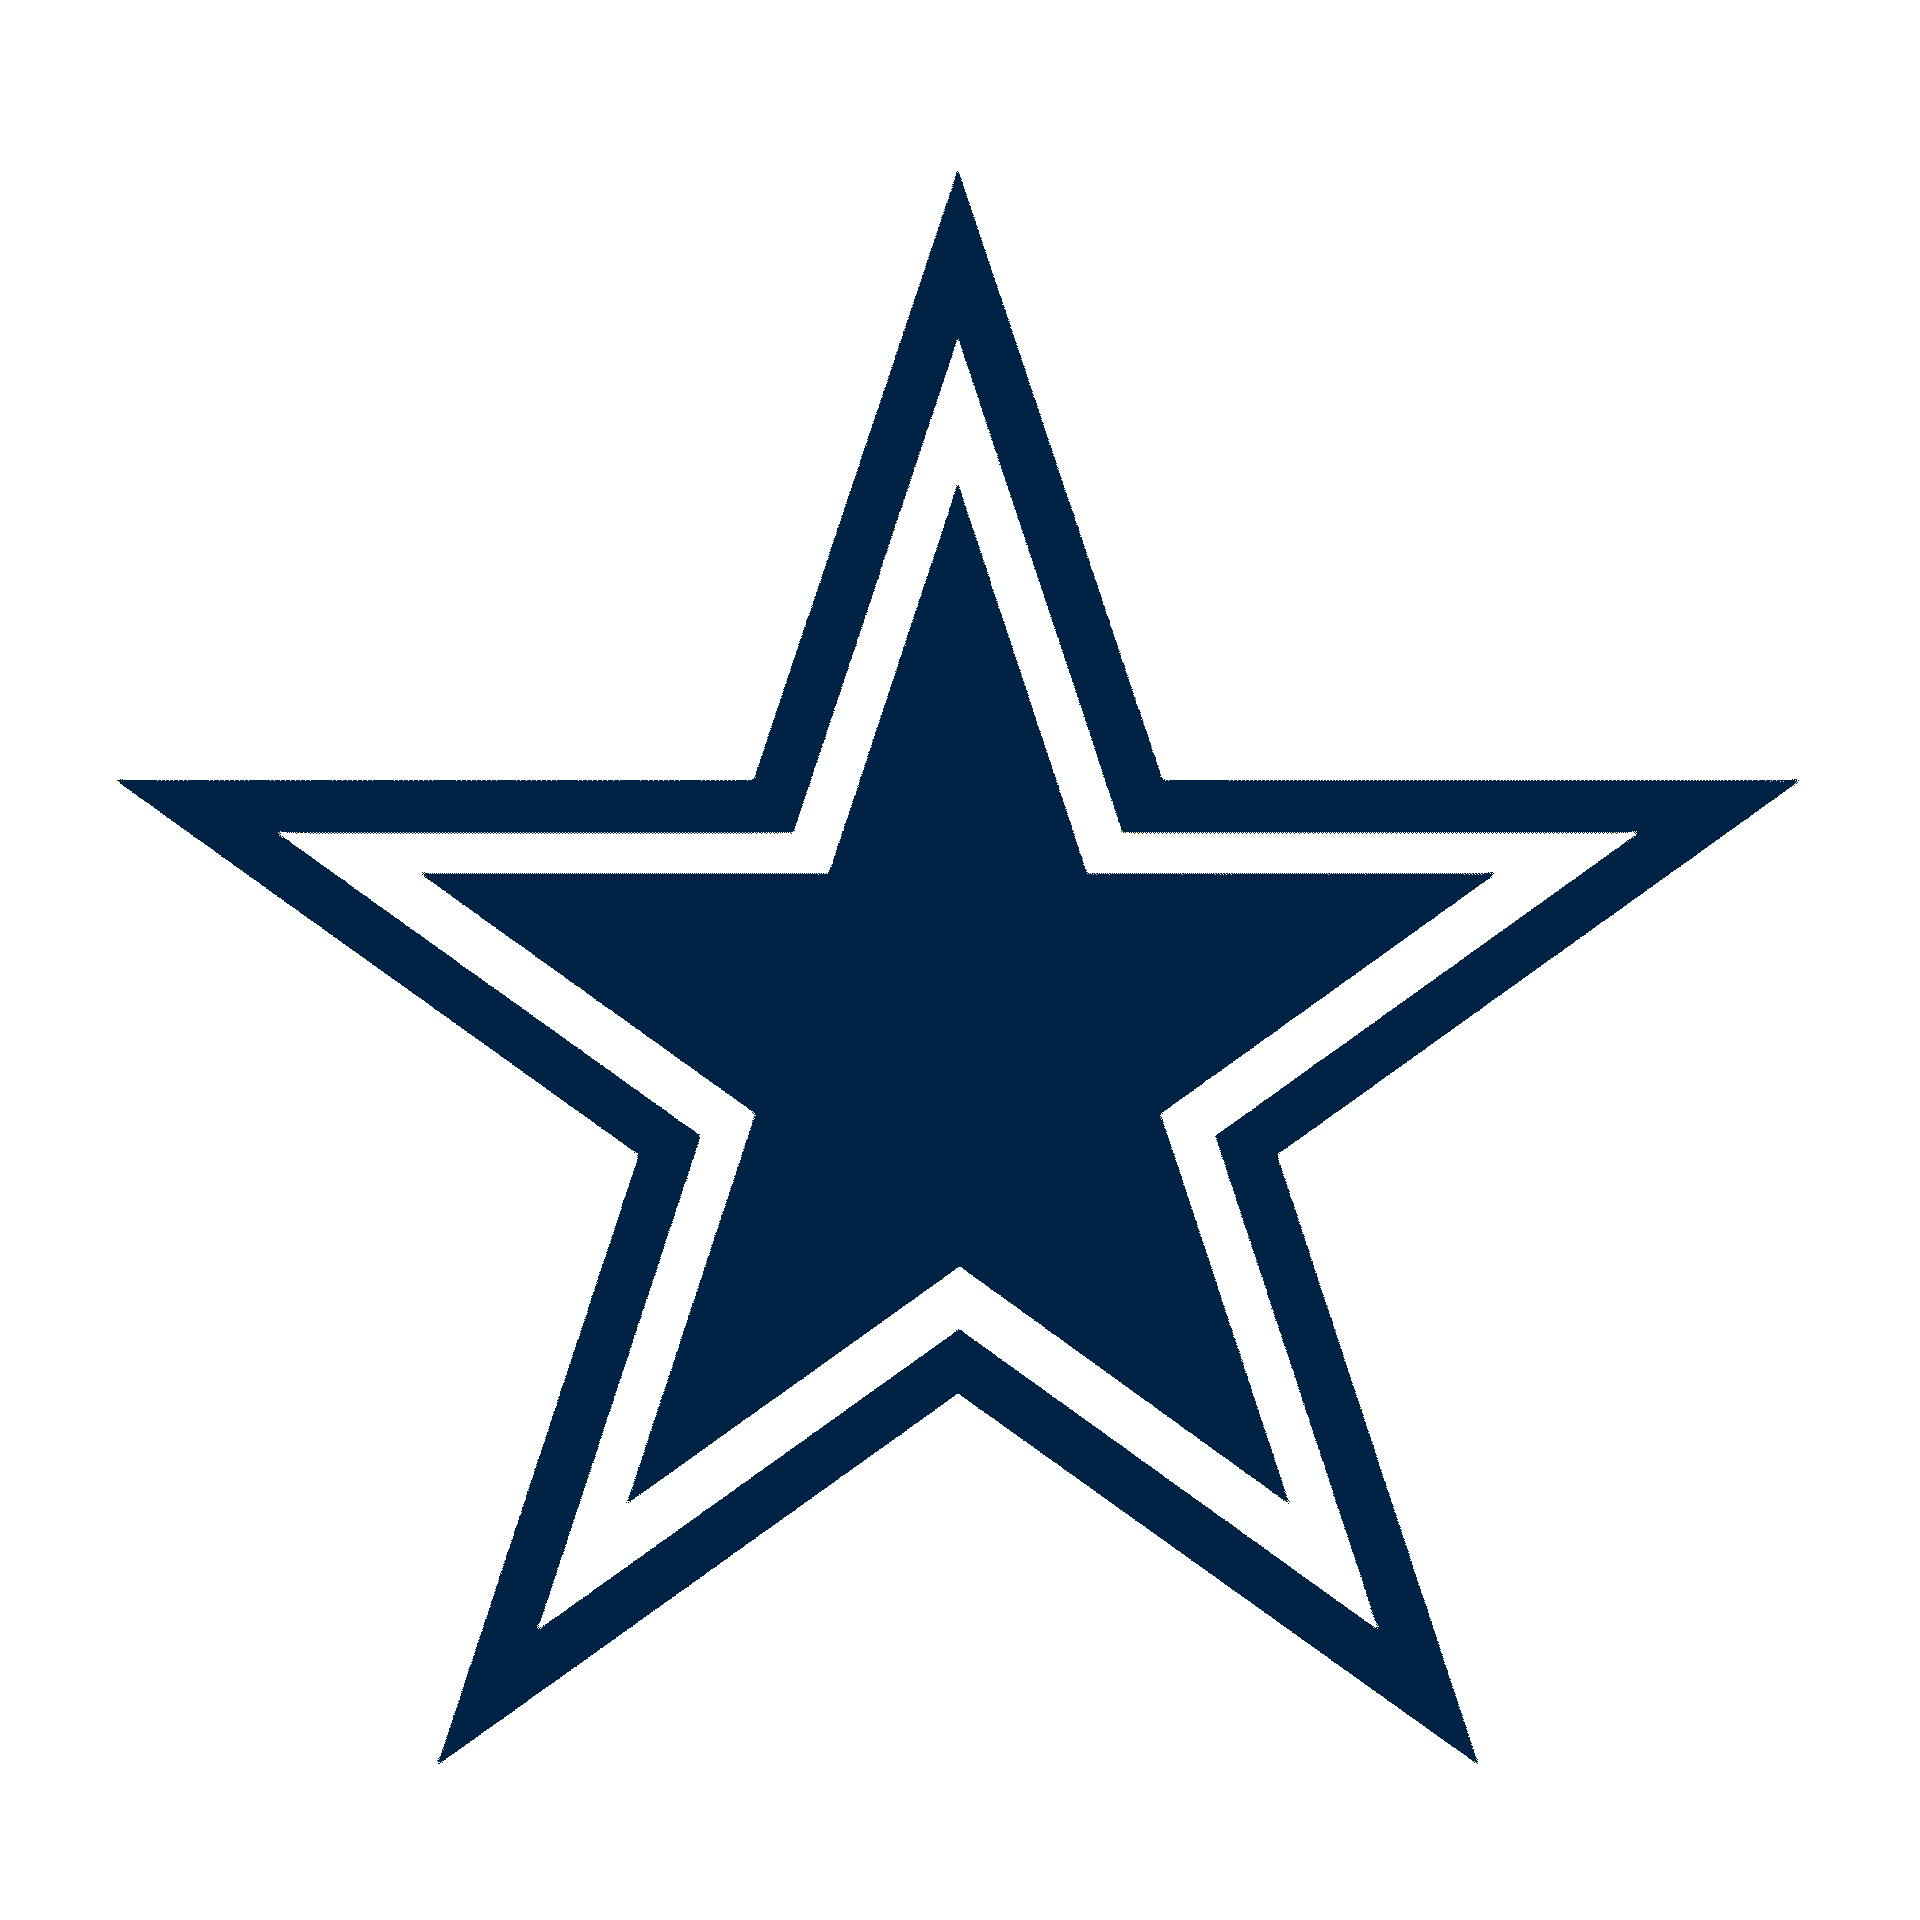 Dallas Cowboys Logo 3d model